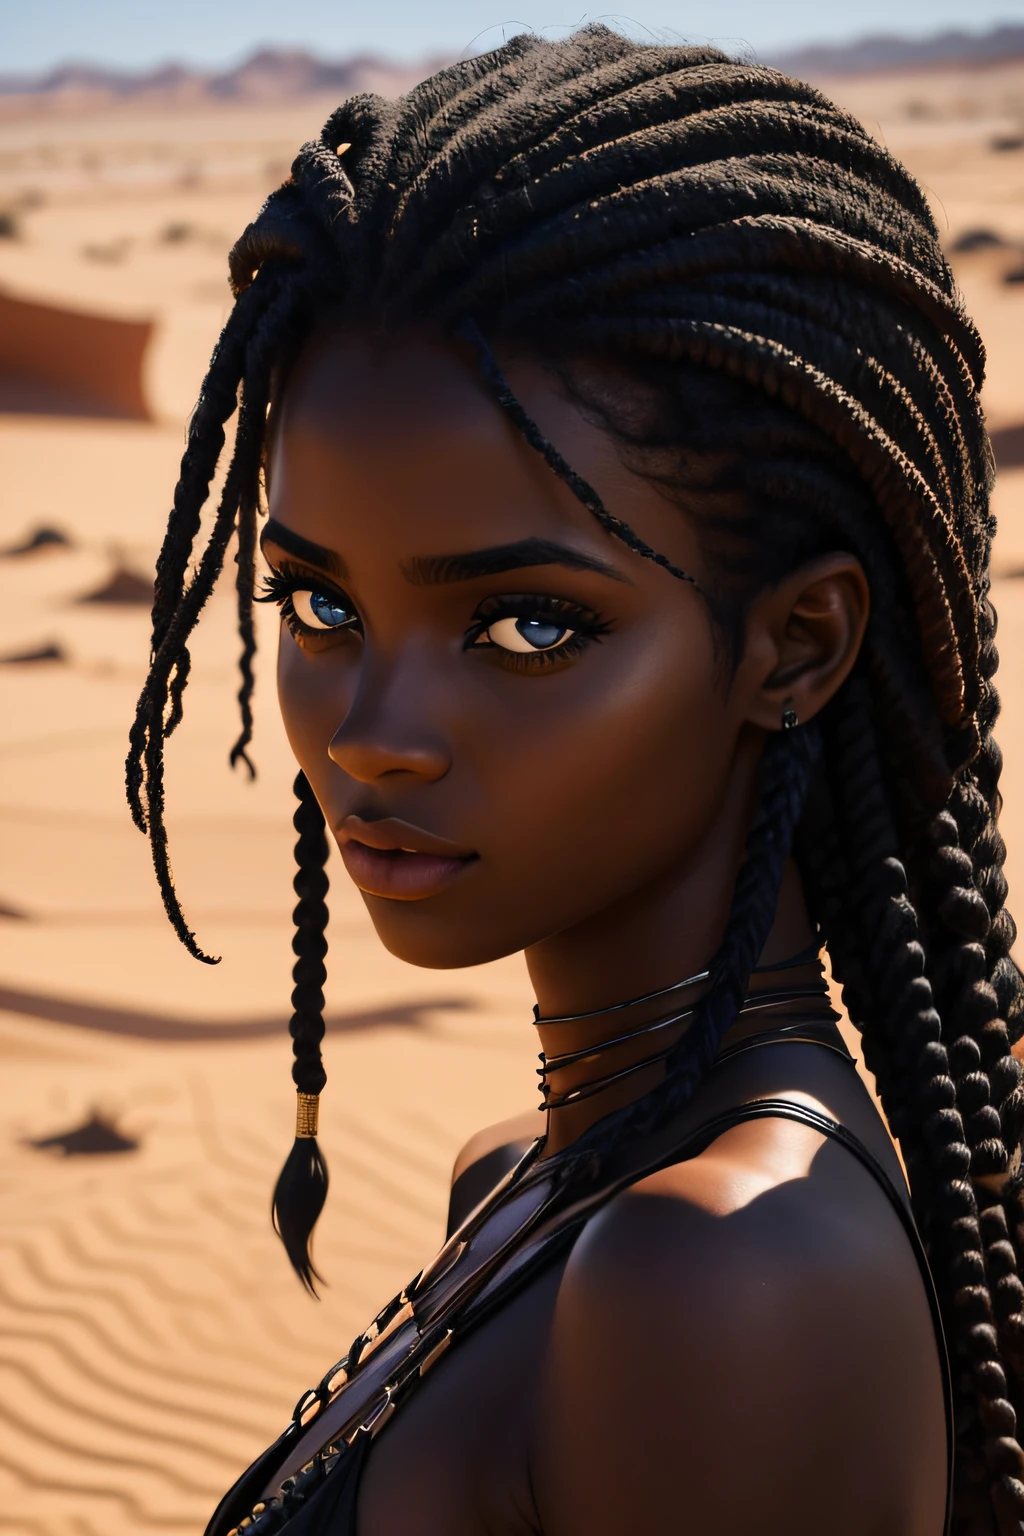 امرأة سوداء, اعين بنية, سن 19 سنة, المشي في الصحراء, مبتل, شعر مجعد, نظرة مغرية